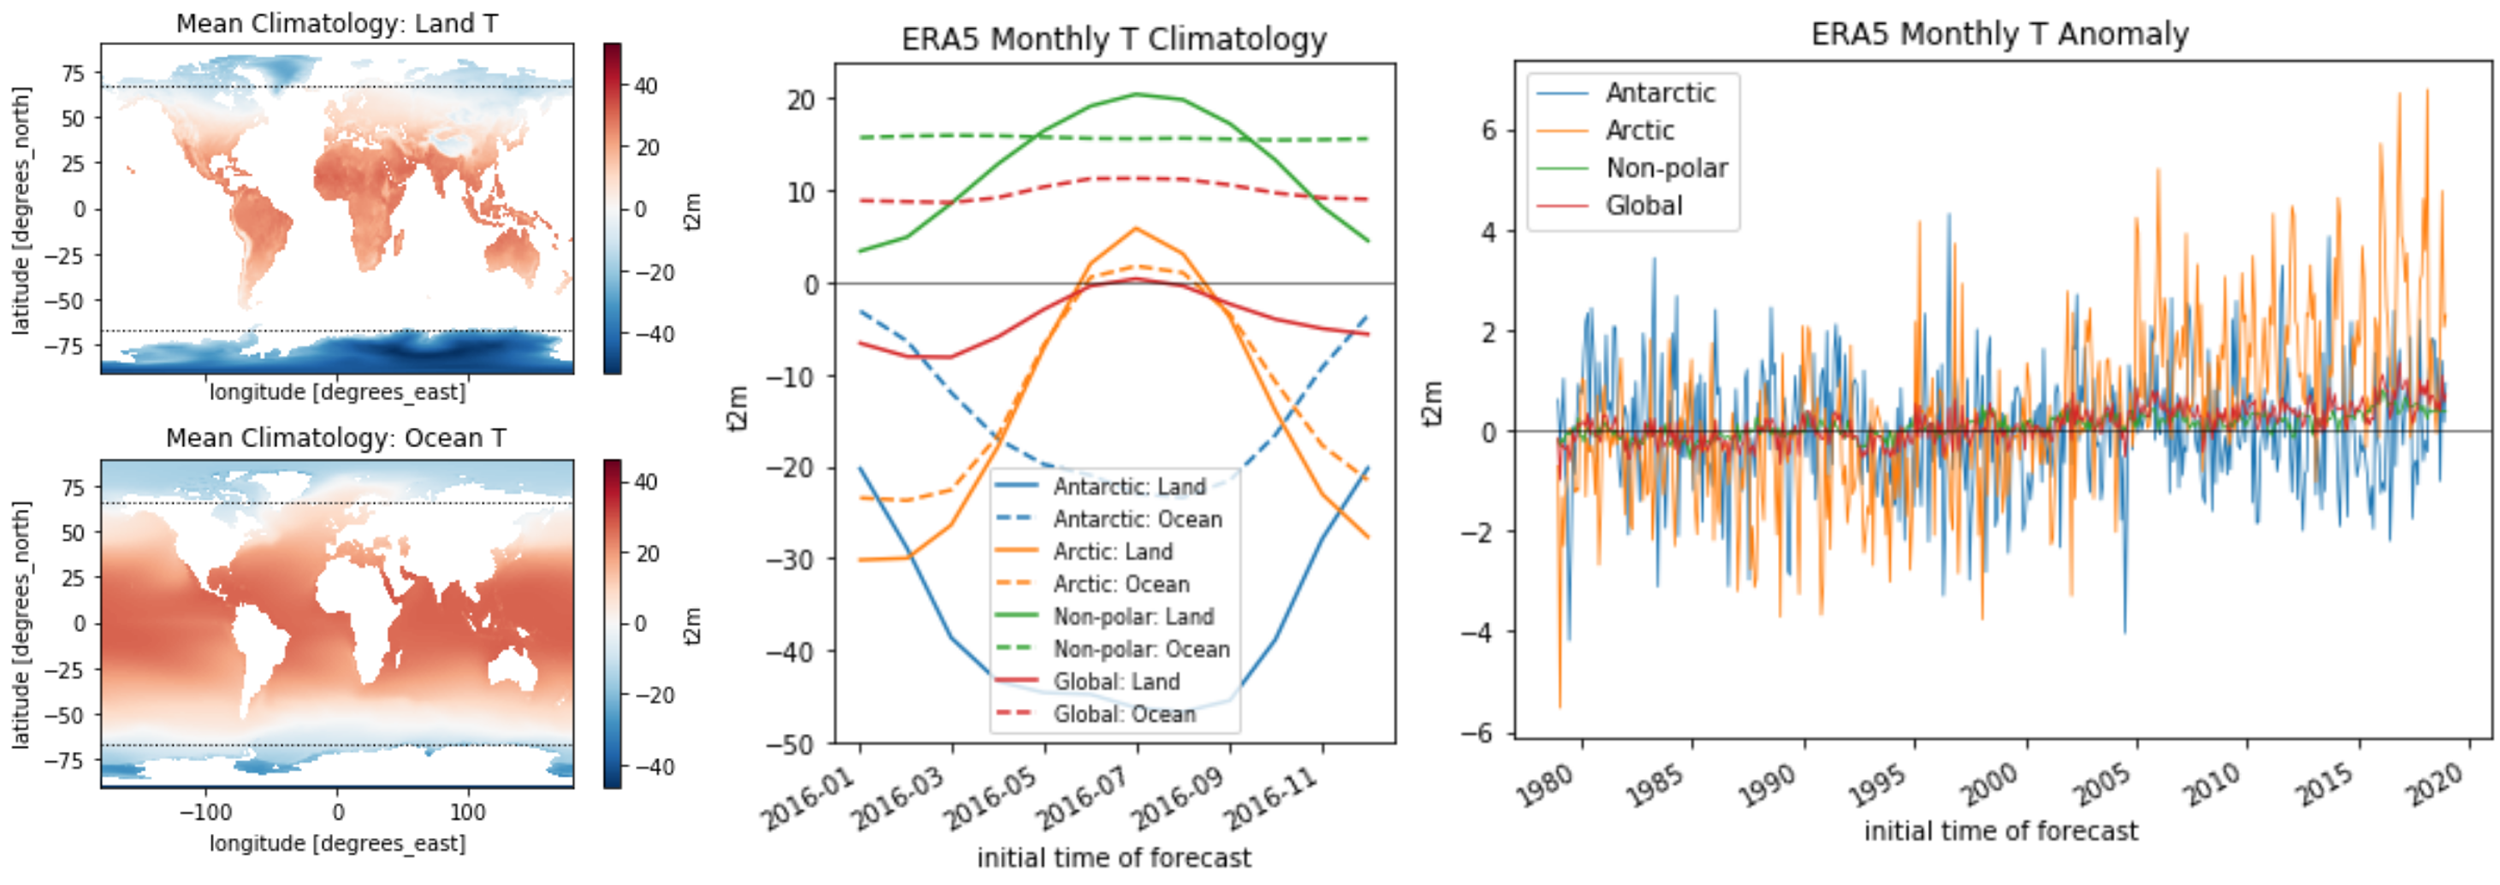 ERA5 Climatology